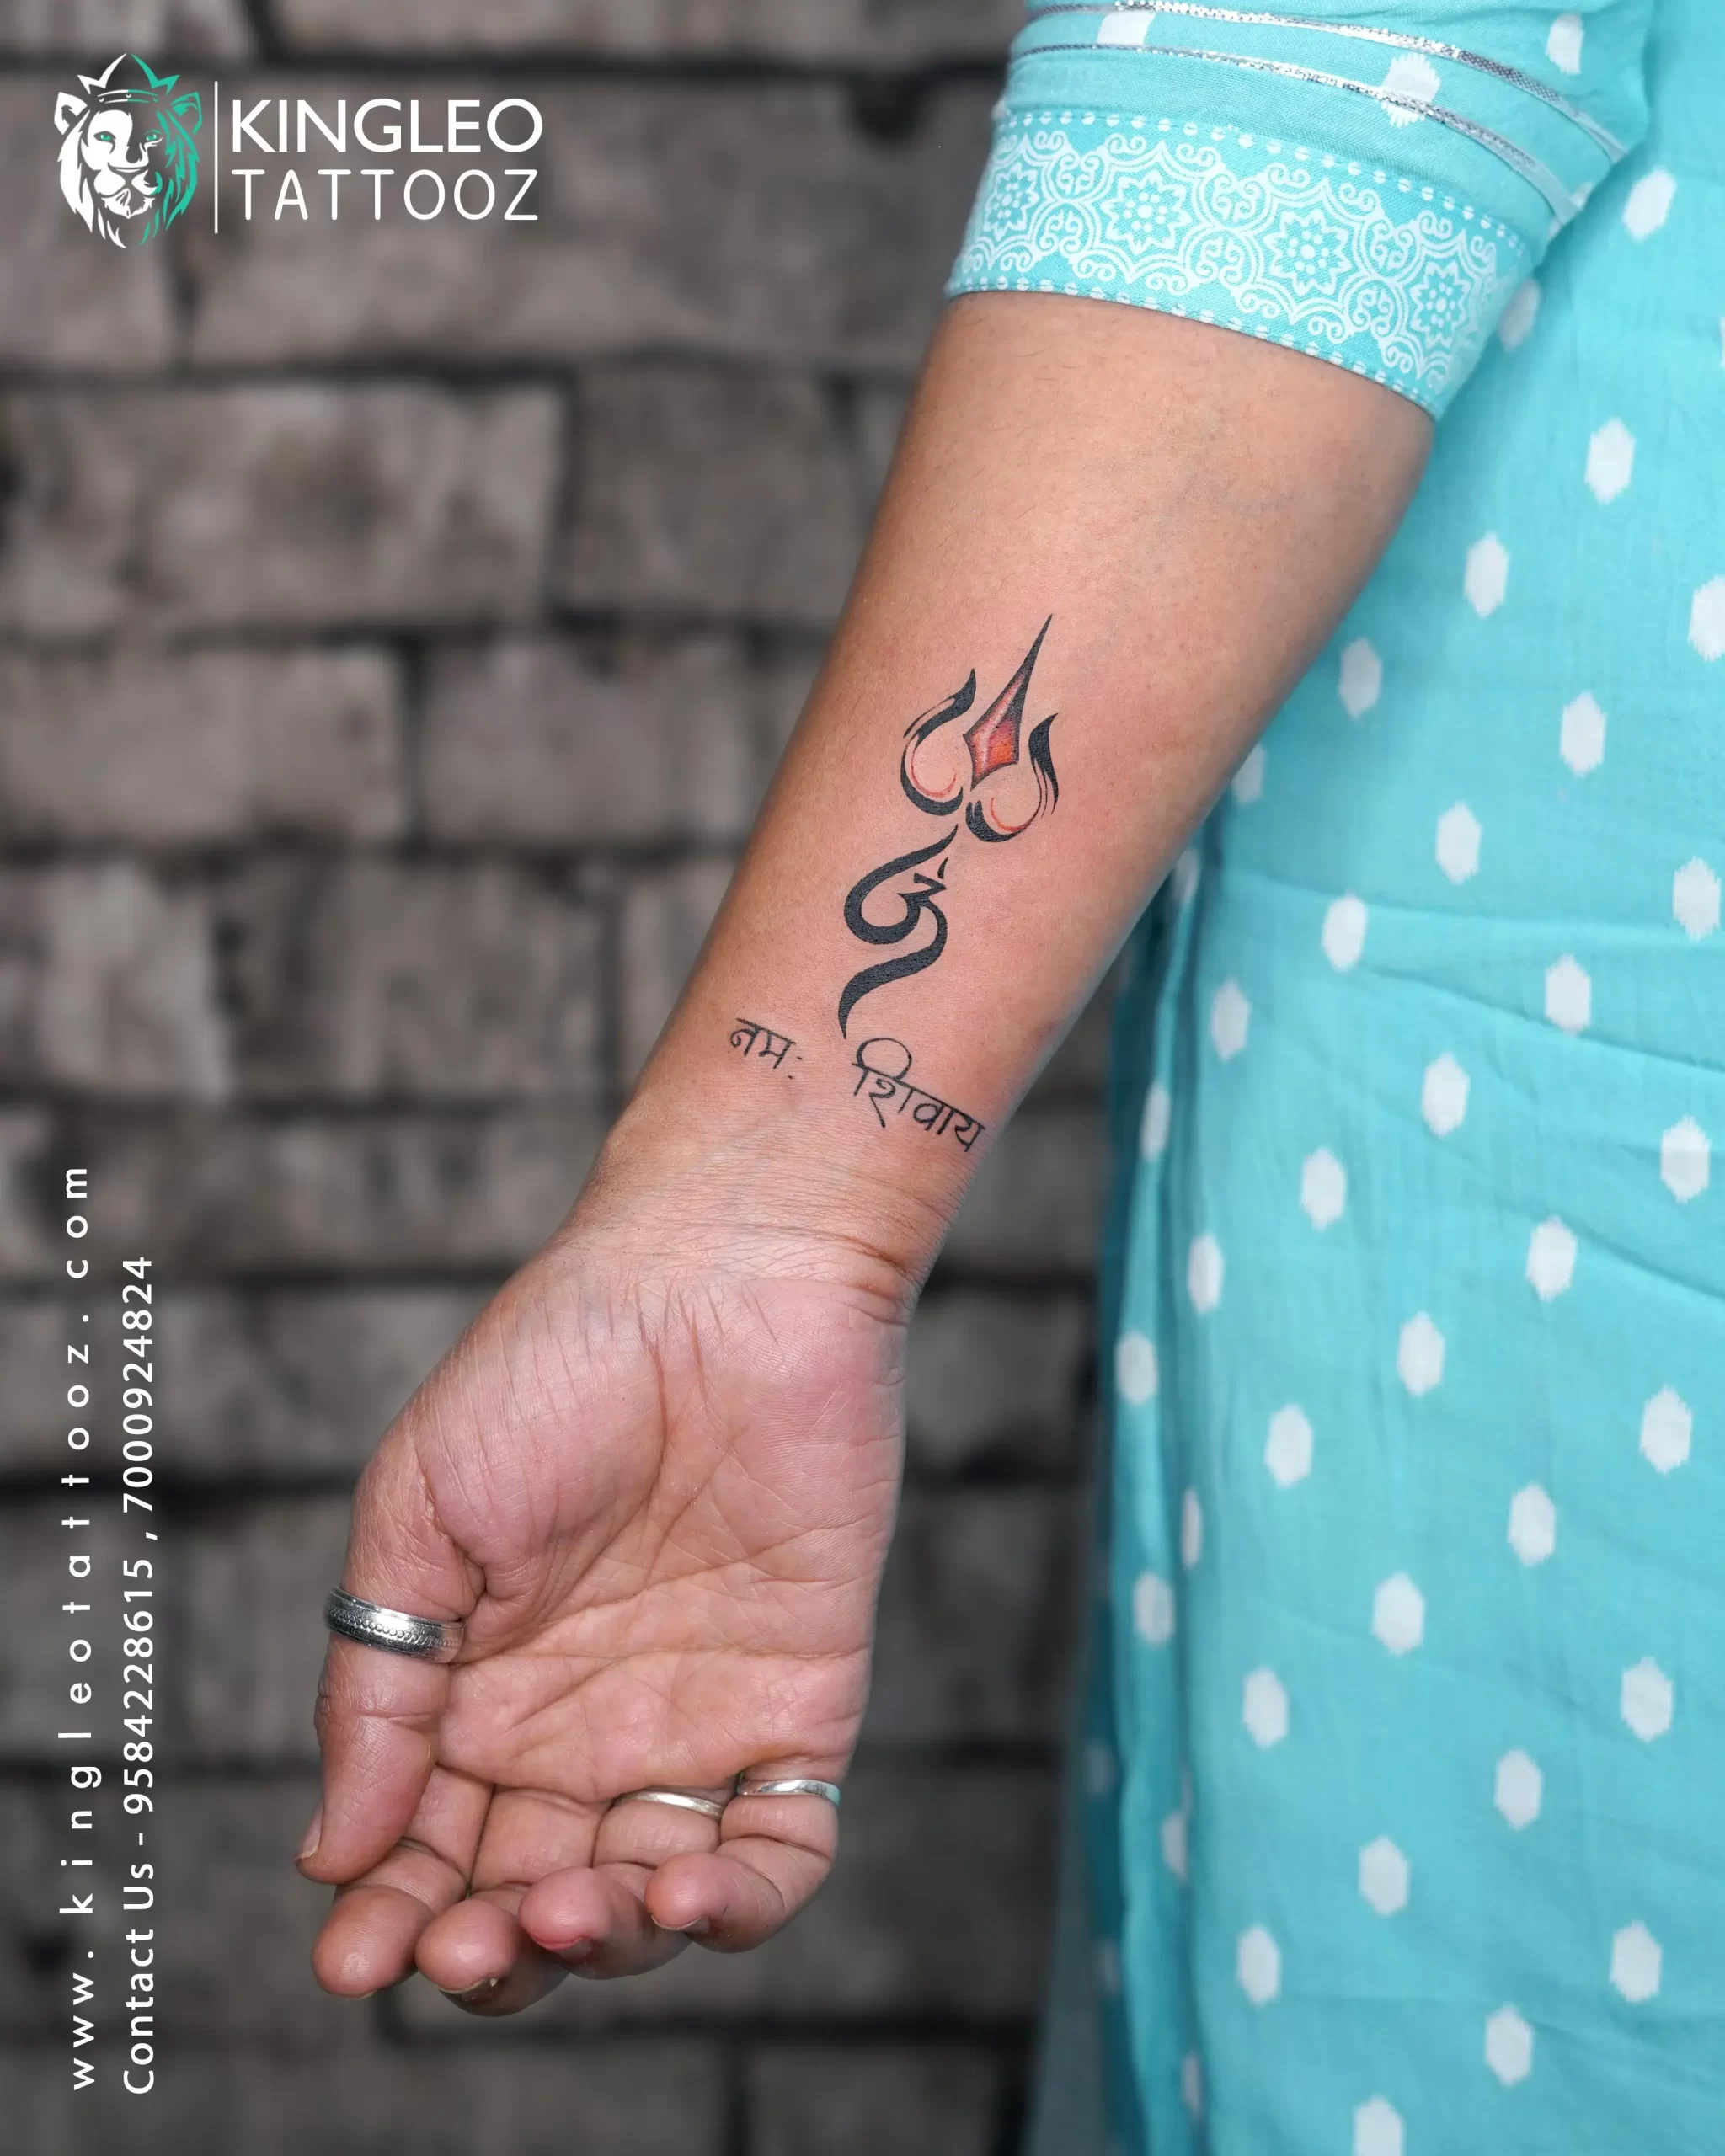 Lord shiva tattoo design | Shiva tattoo design, Wrist tattoos for guys, Arm  tattoos for guys forearm